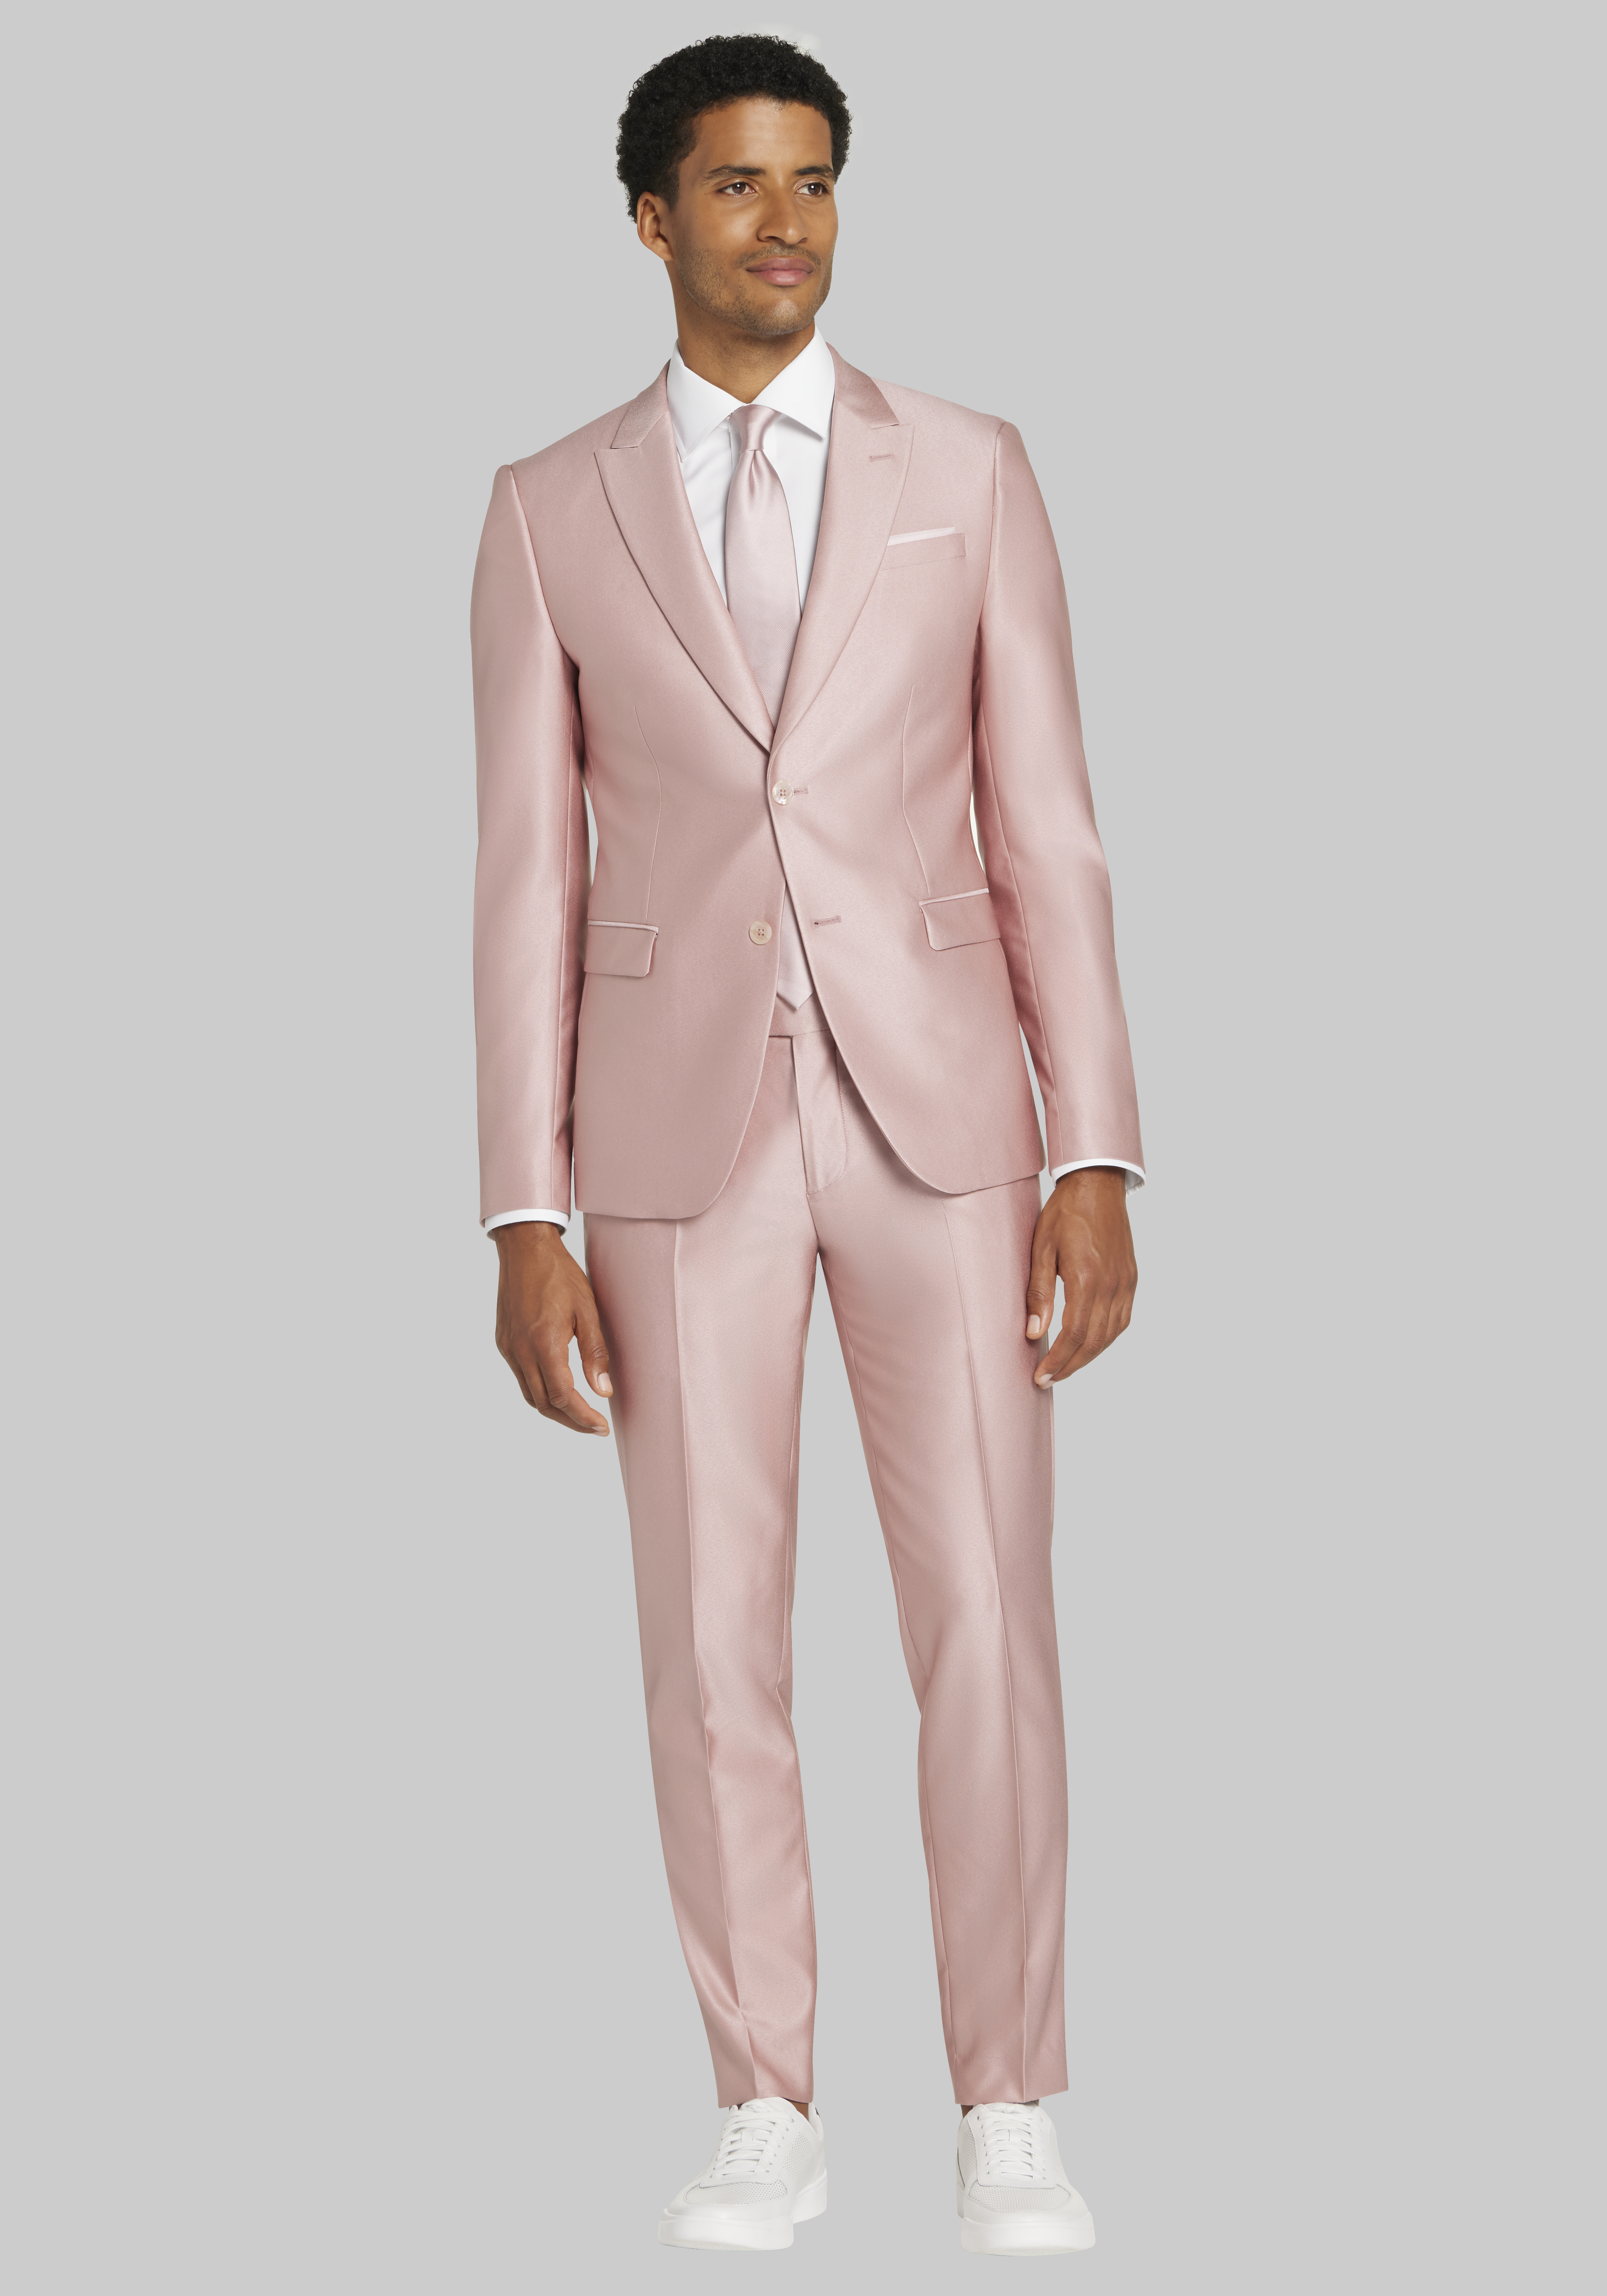 Suit Deals | Men's Suits | JoS. A. Bank